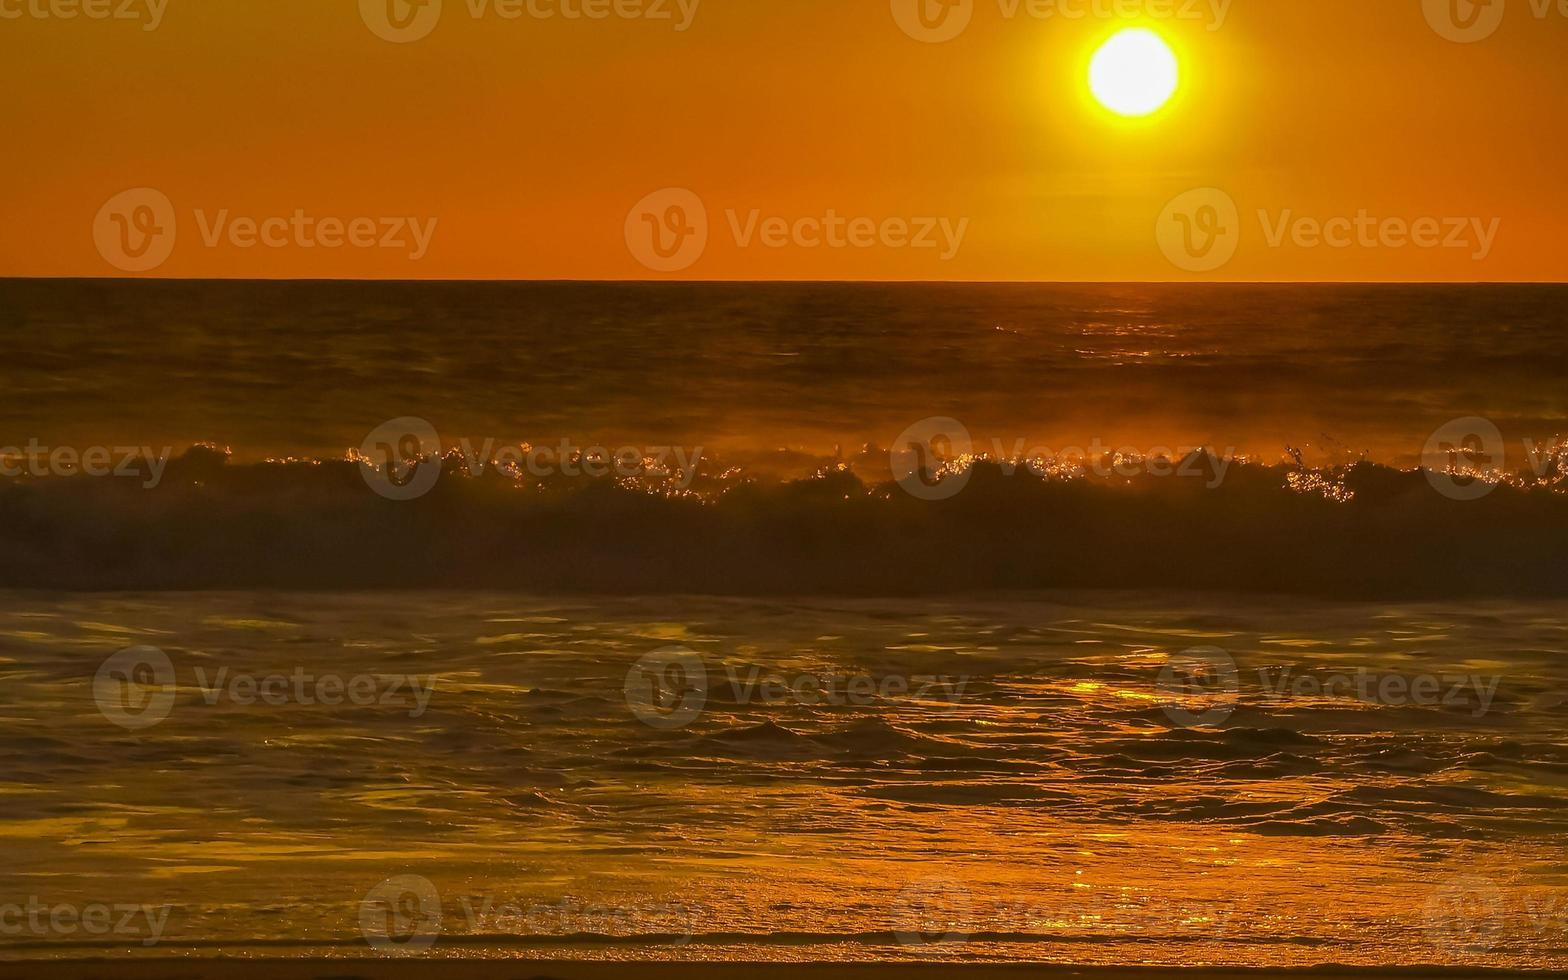 colorido atardecer dorado gran ola y playa puerto escondido mexico. foto